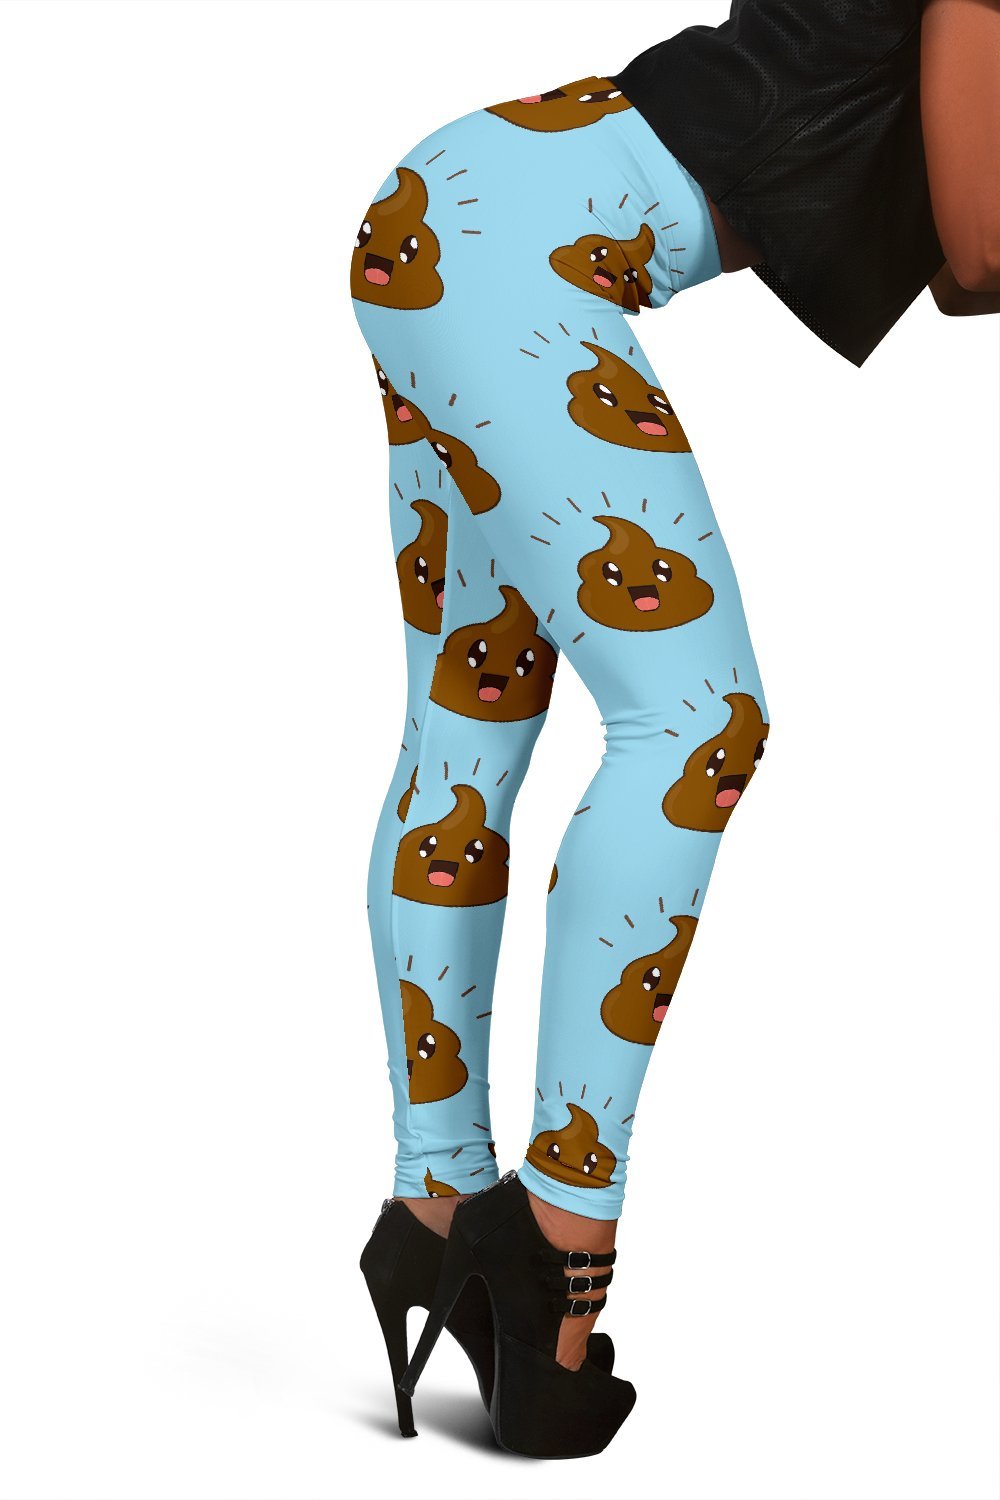 Poop Emoji Print Pattern Women Leggings-grizzshop